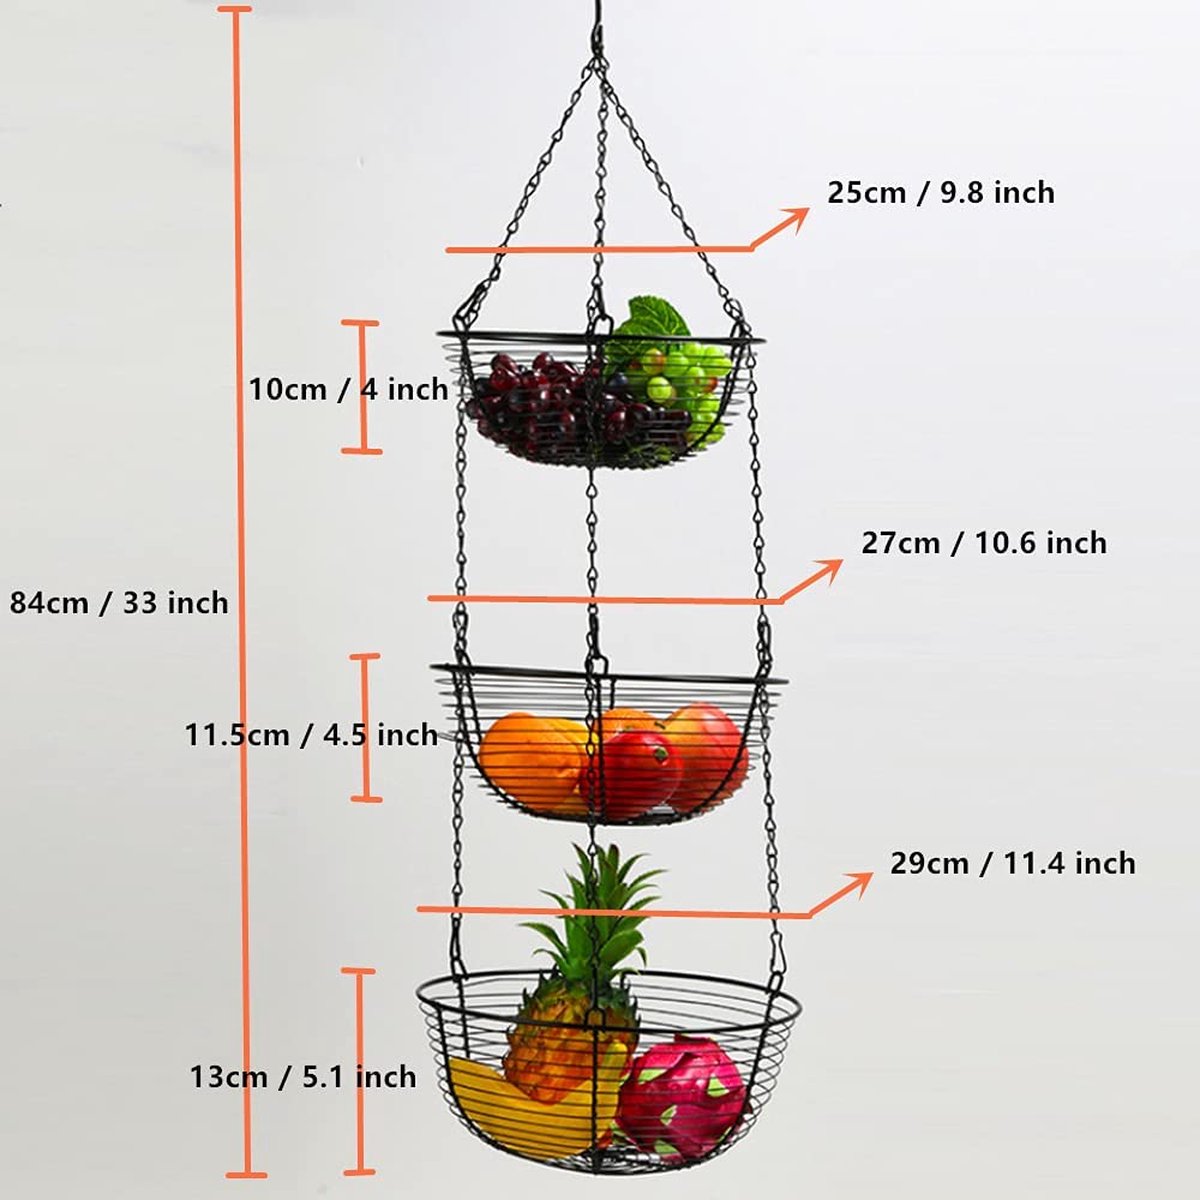 Fruitmand hangend met 3 etages voor opslag, fruit- en groentemanden met haken, ijzer